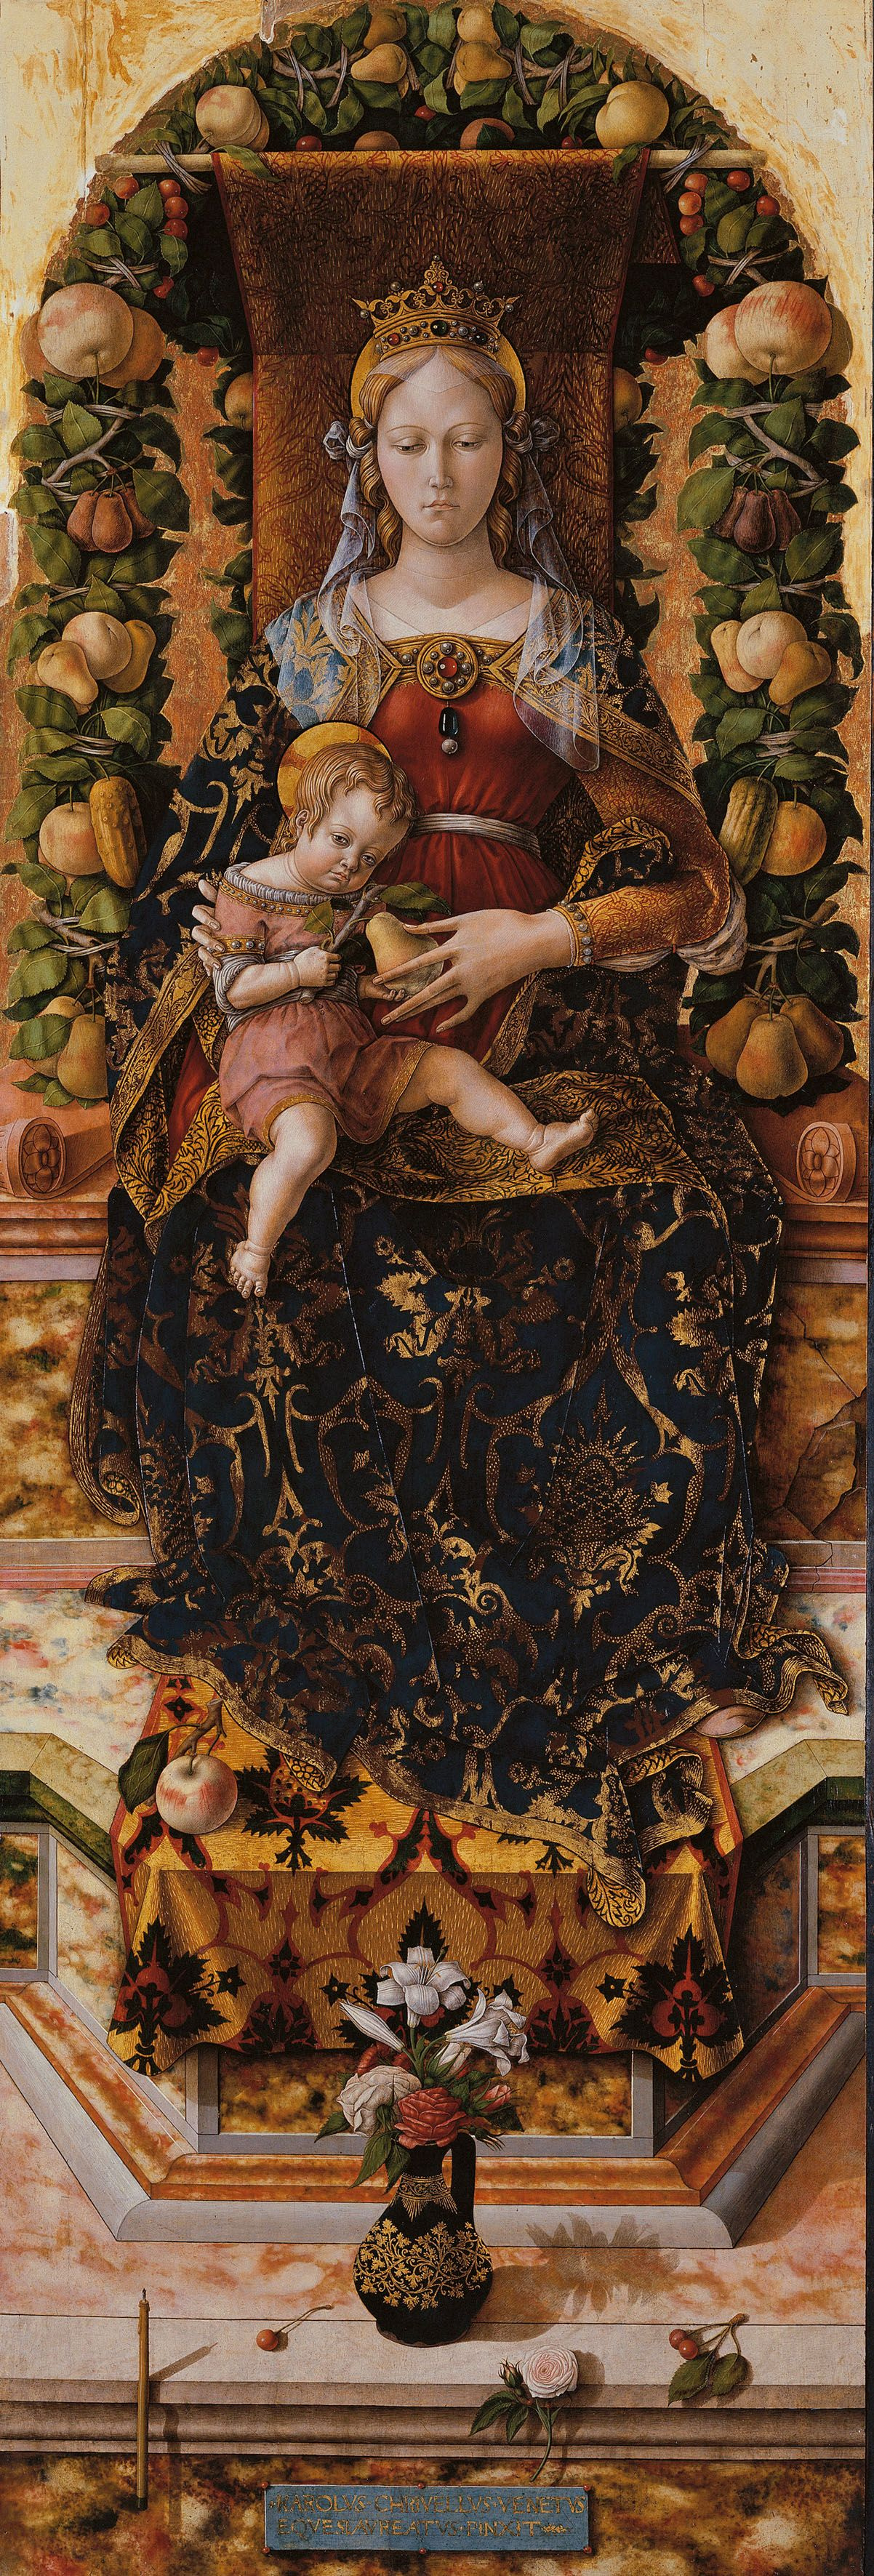 Карло Кривелли. Мадонна делла Канделетта. Алтарь из кафедрального собора в Камерино